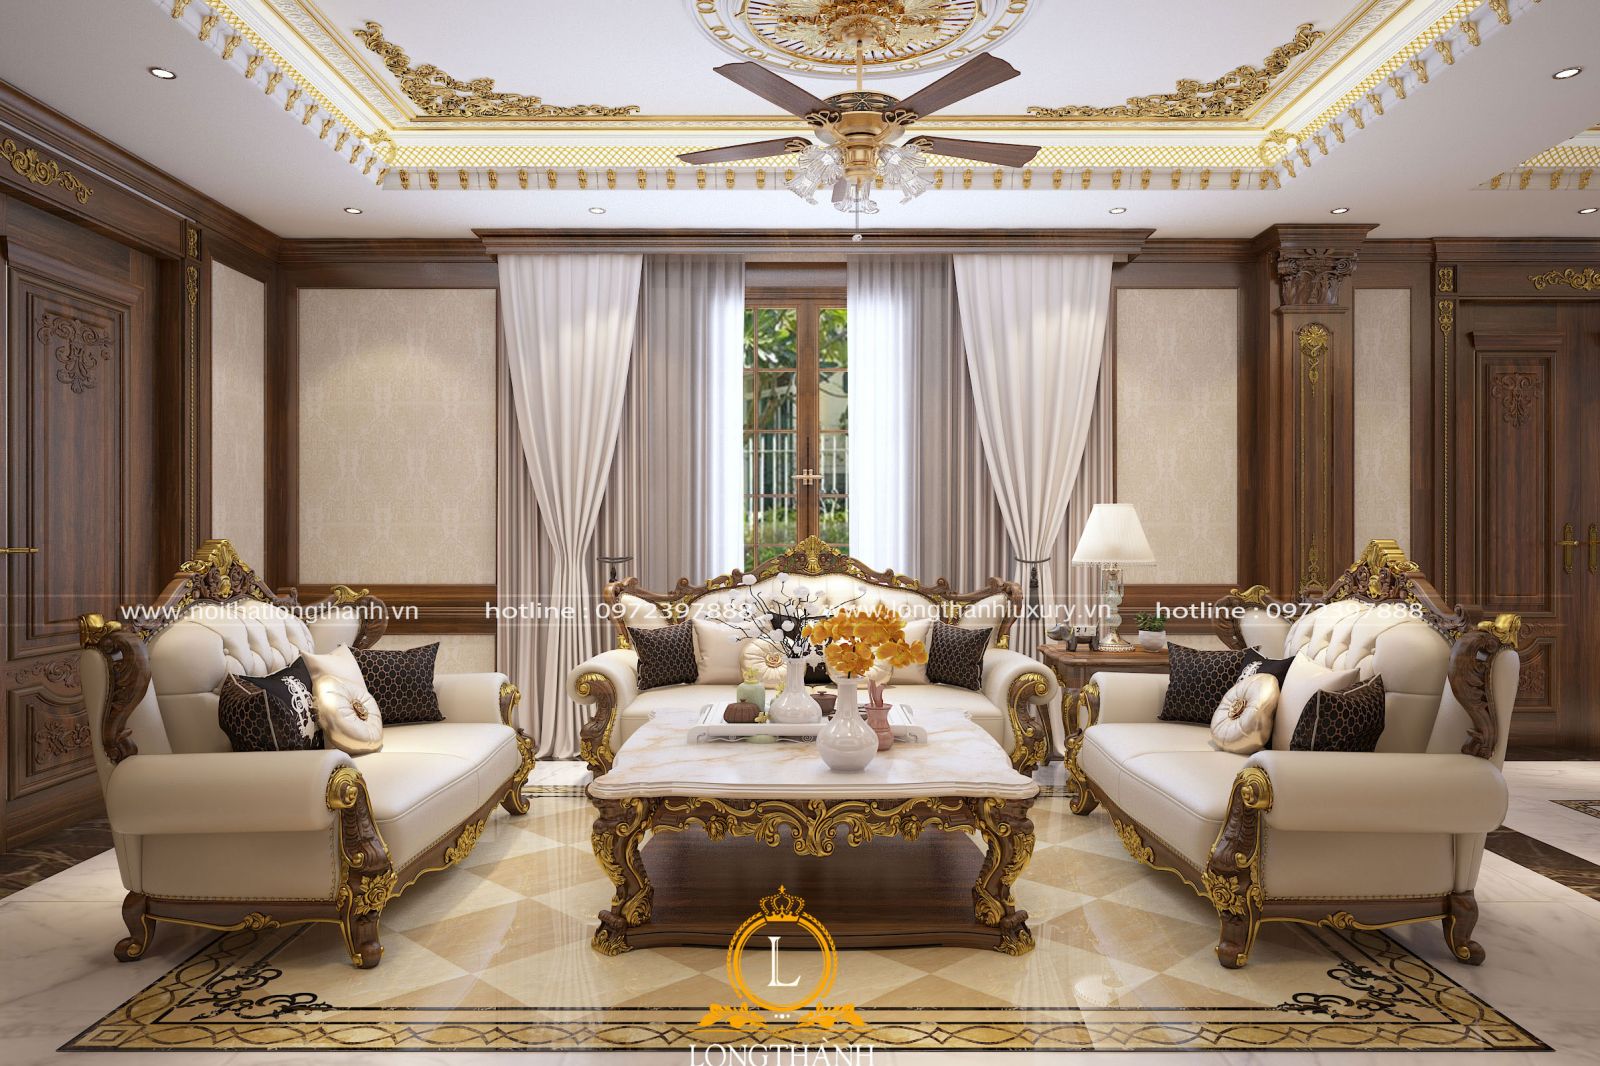 Không gian phòng khách được chạm khắc hoa văn dát vàng tinh tế mang đậm dấn ấn tân cổ điển